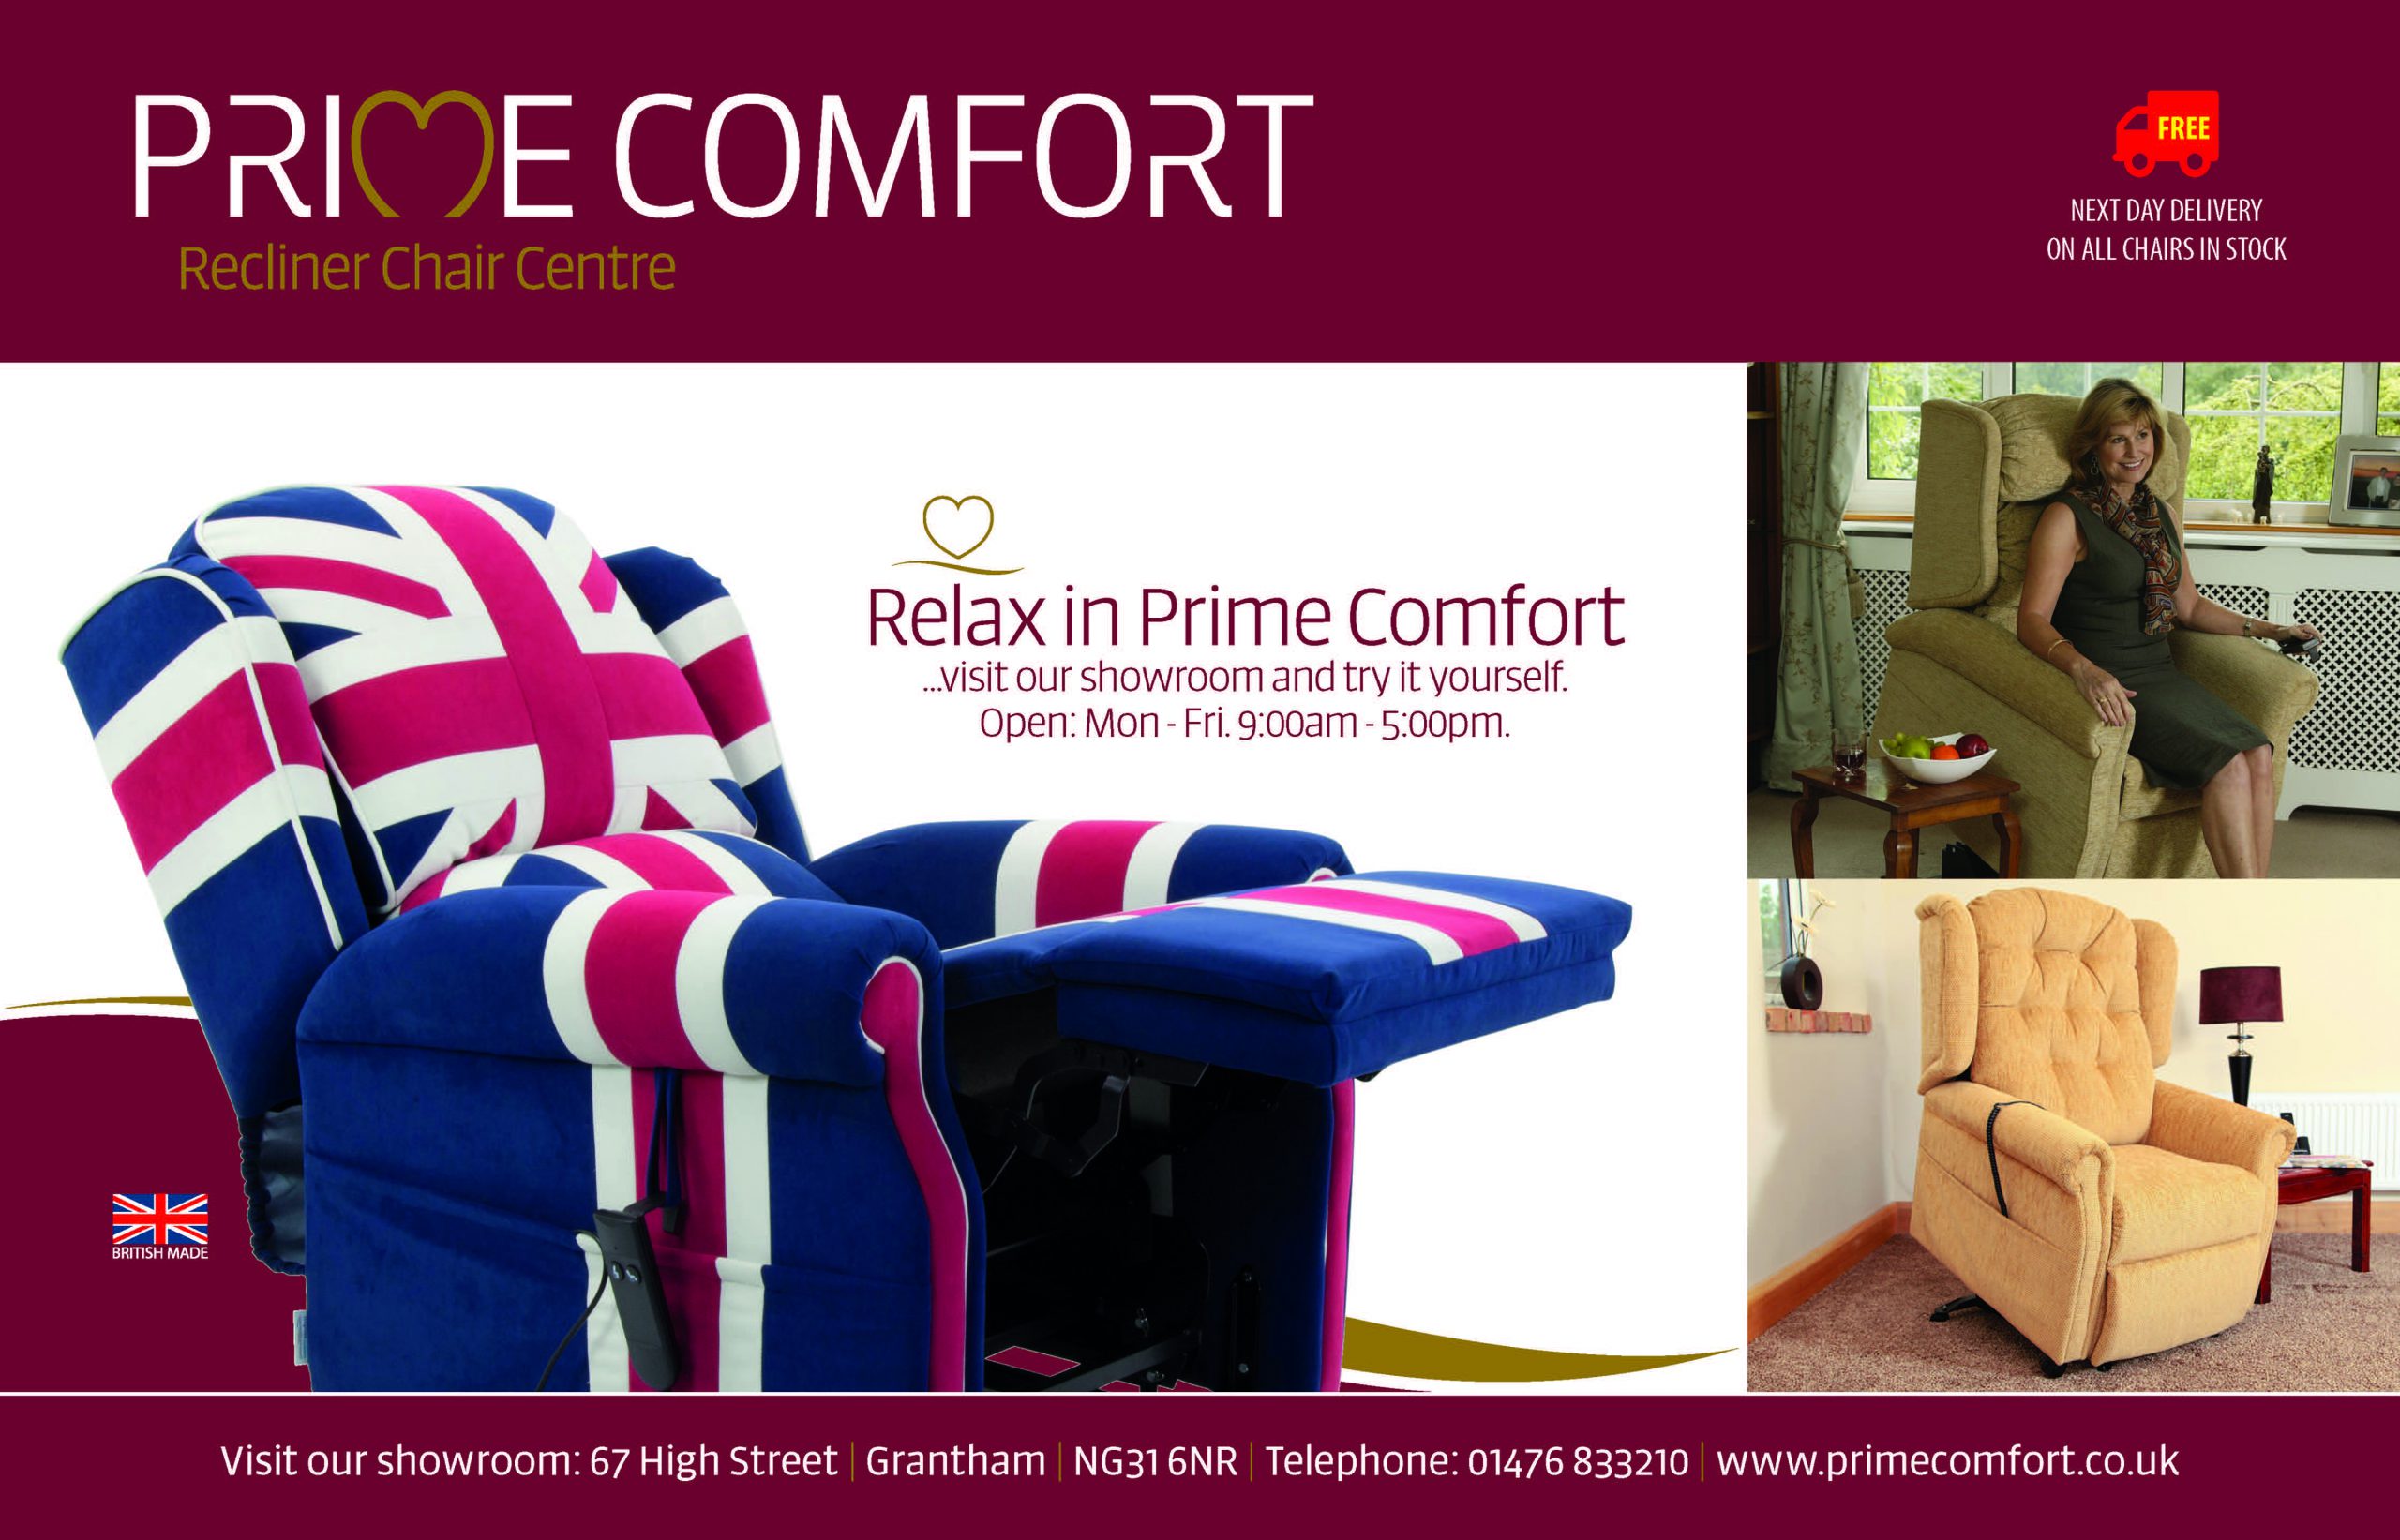 (c) Primecomfort.co.uk